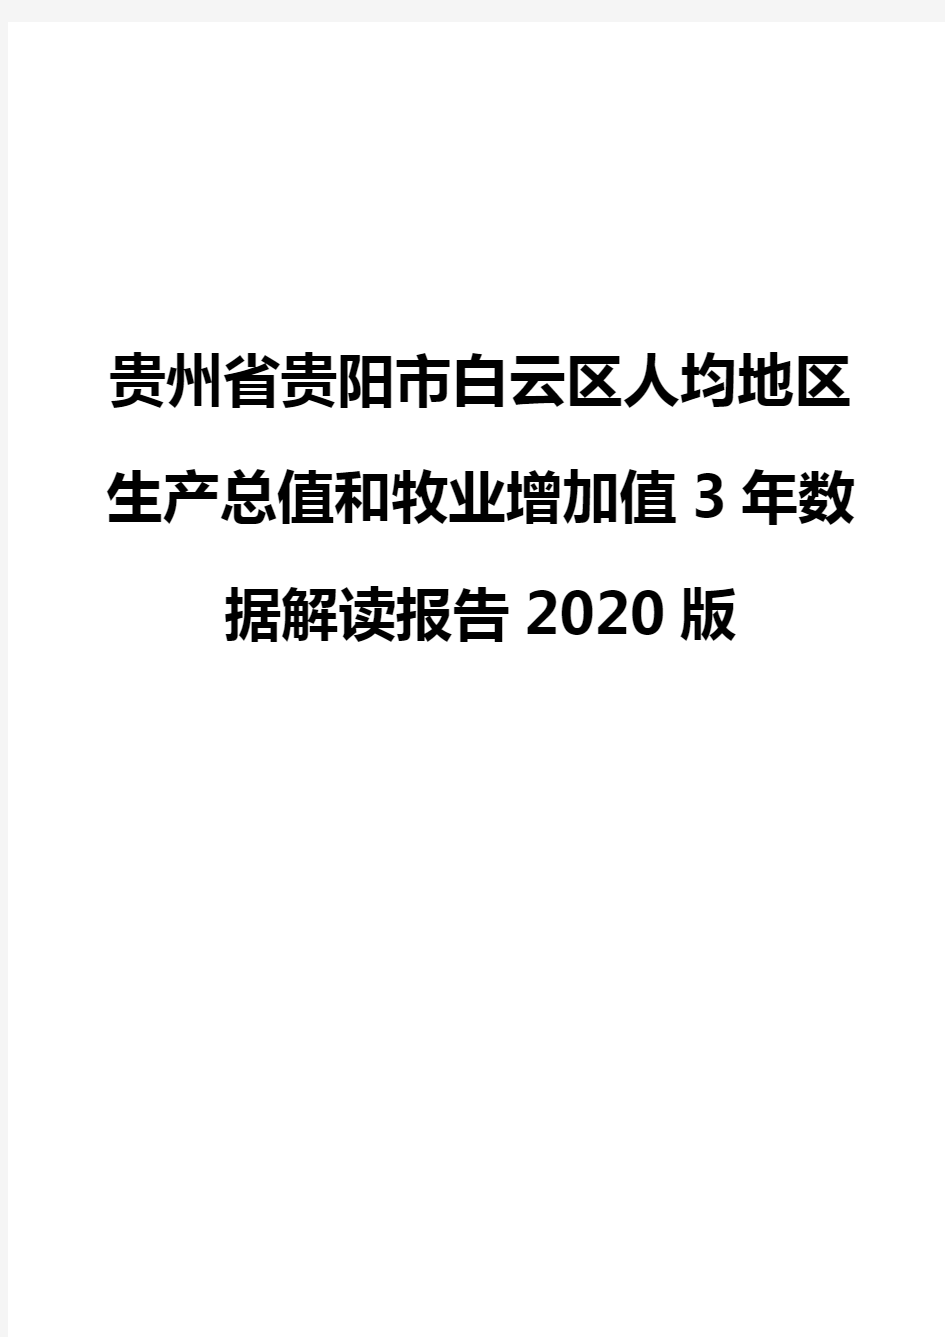 贵州省贵阳市白云区人均地区生产总值和牧业增加值3年数据解读报告2020版